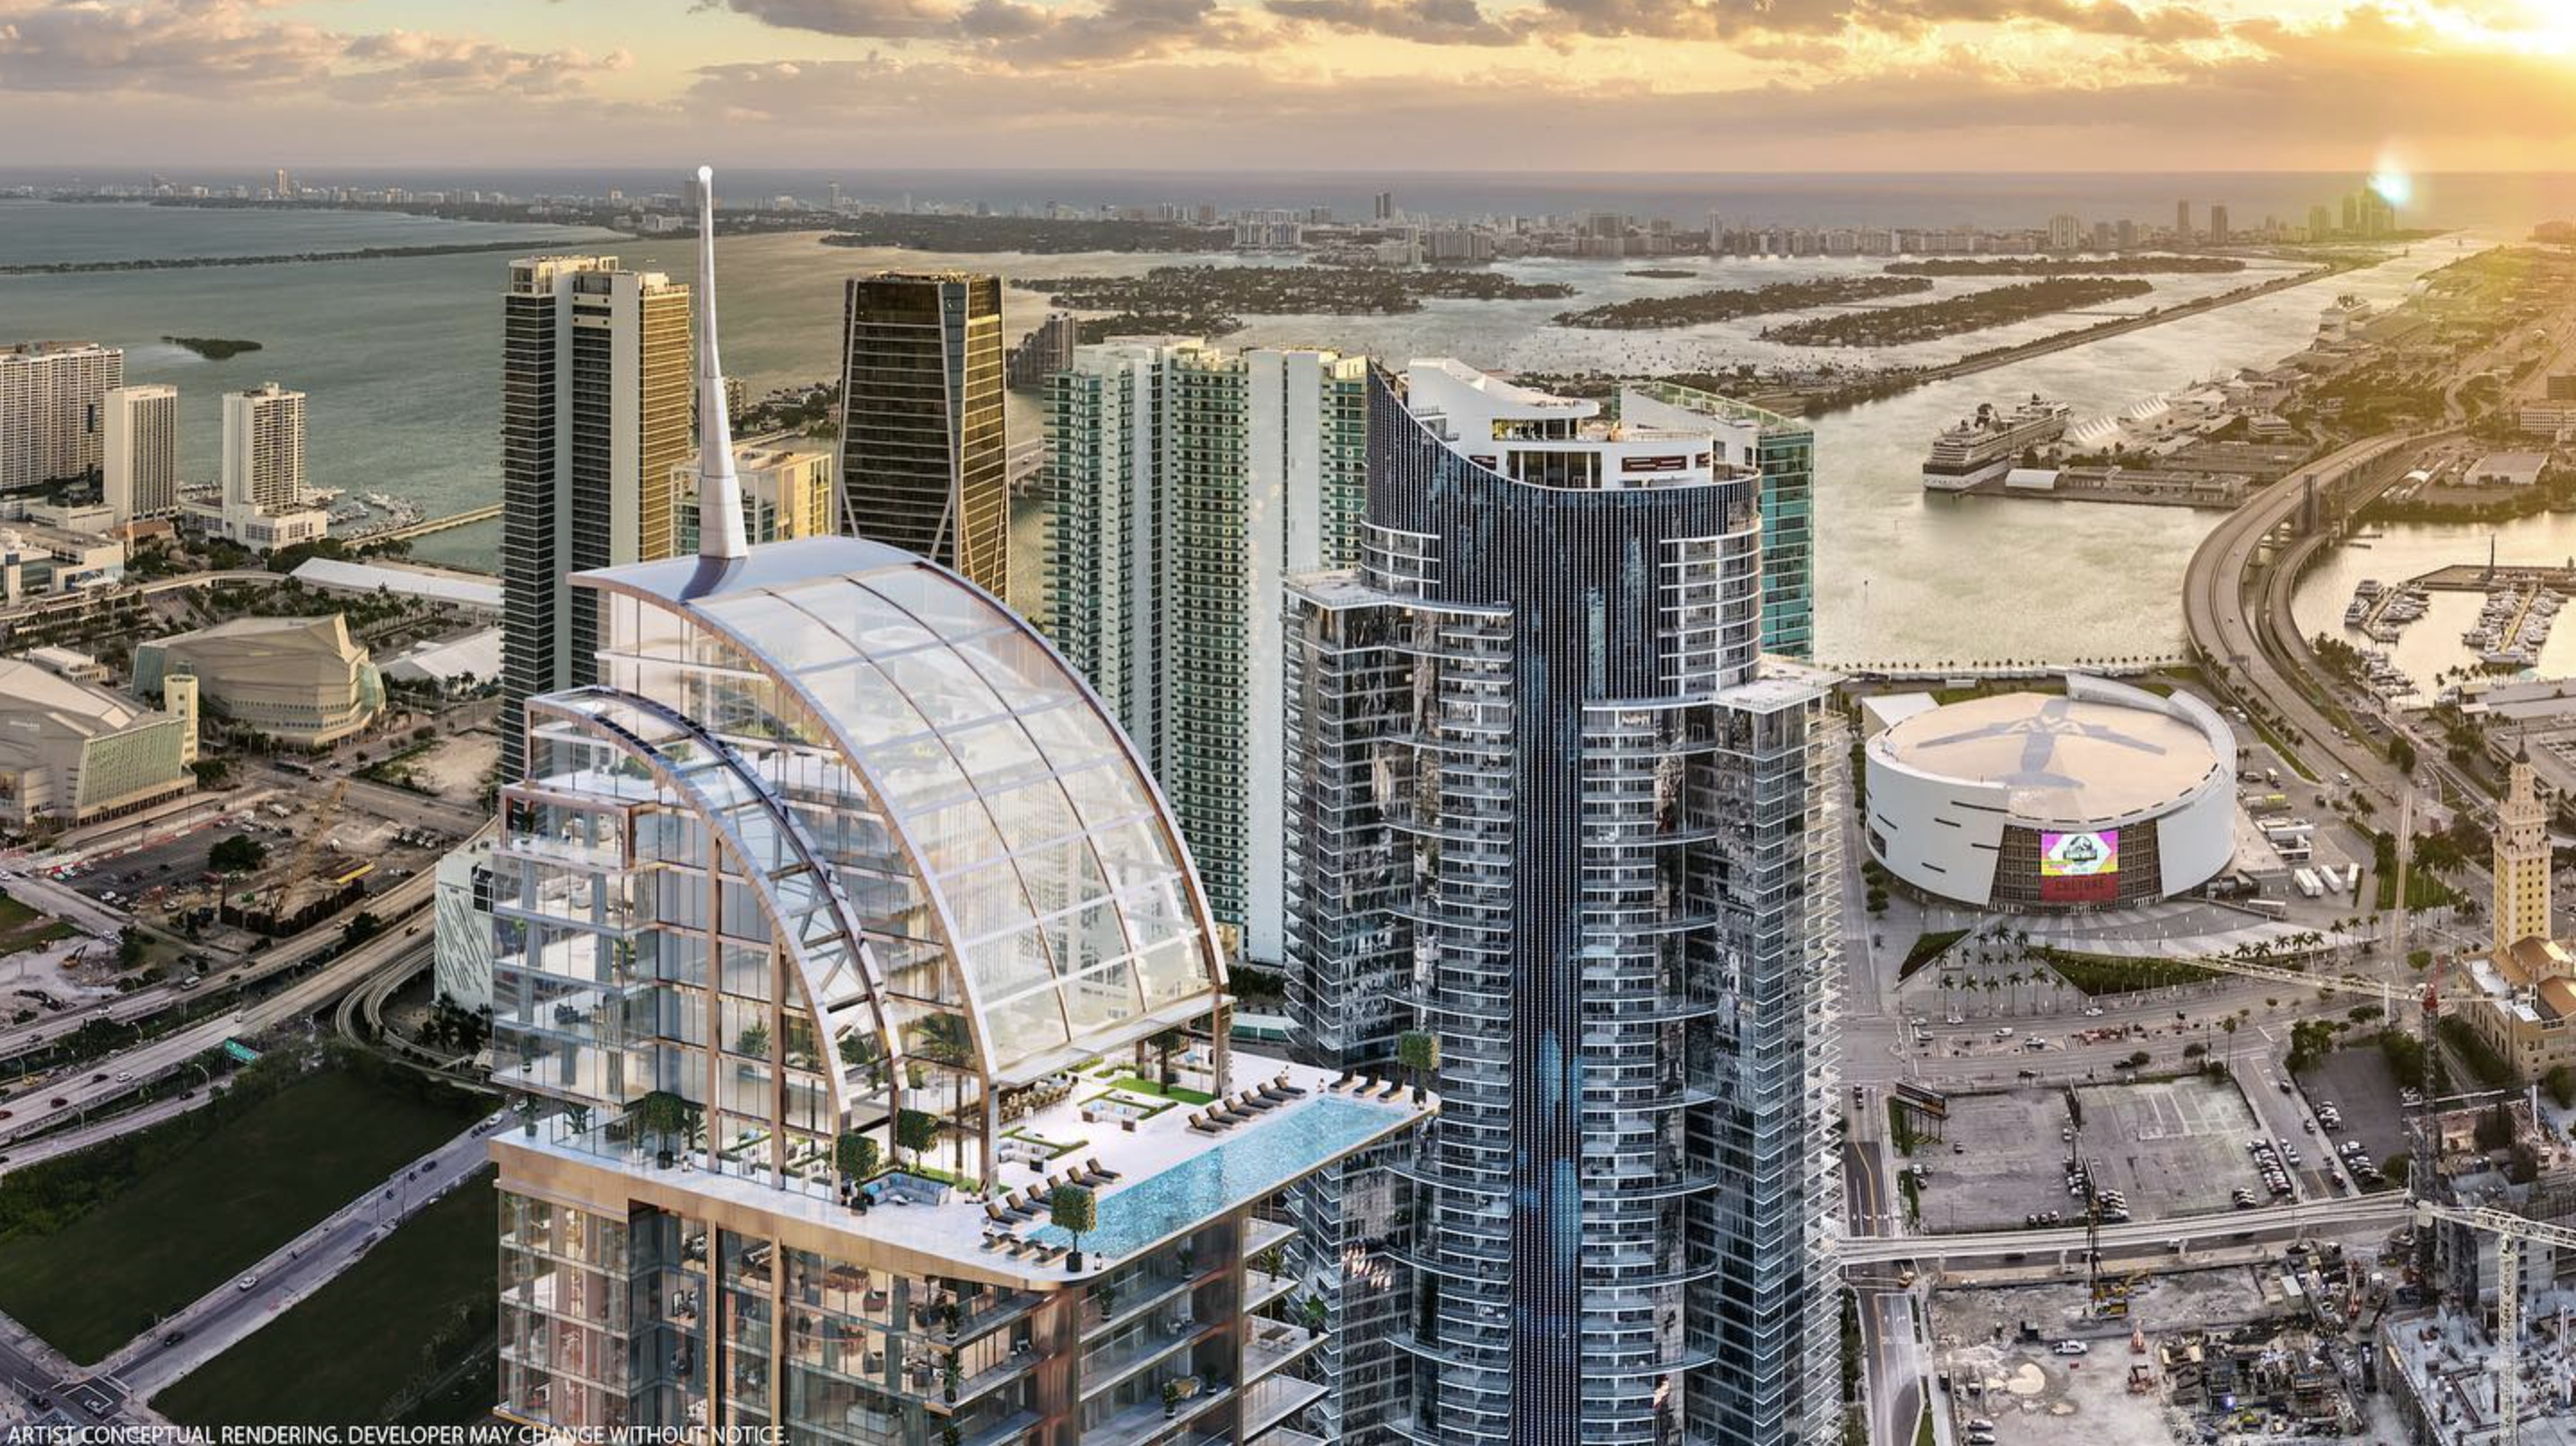 Legacy Miami Worldcenter. Designed by Kobi Karp.